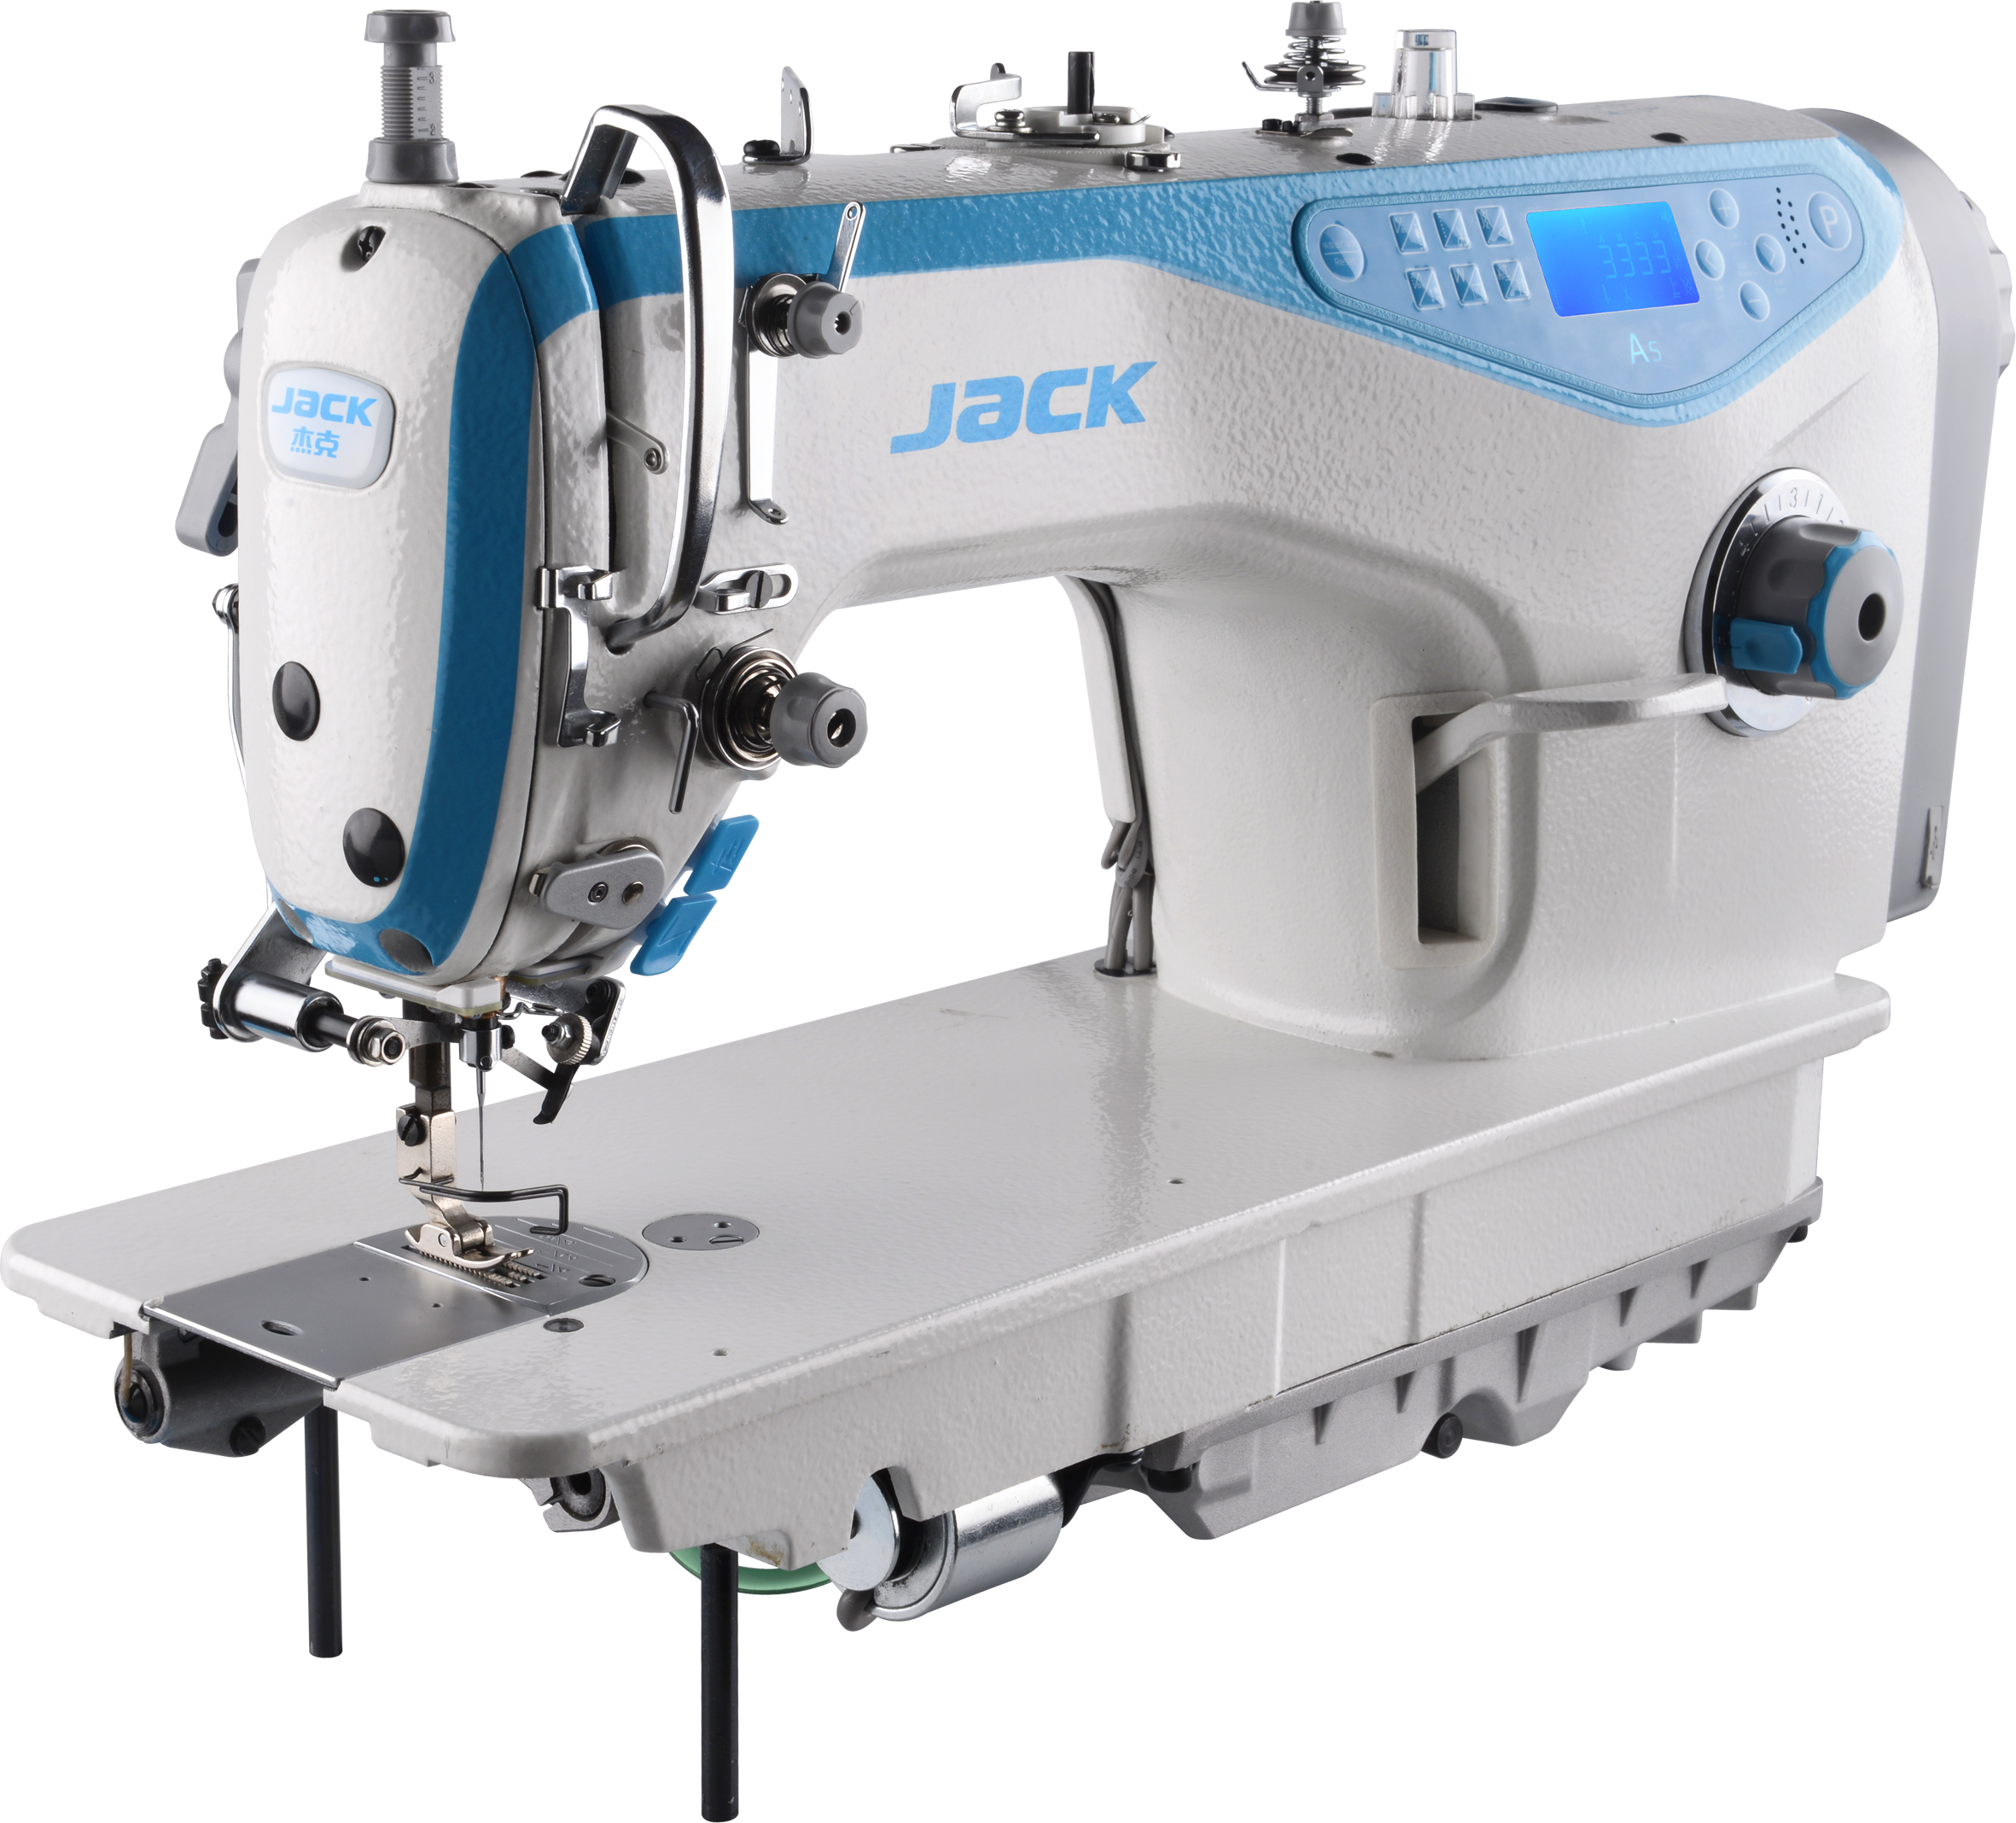 Промышленная прямострочная швейная машина купить. Швейная машина Jack JK-a4. Промышленная швейная машина Jack JK-a5wn. Промышленная швейная машина Jack JK-a5 (комплект. Промышленная швейная машина Jack оверлок.